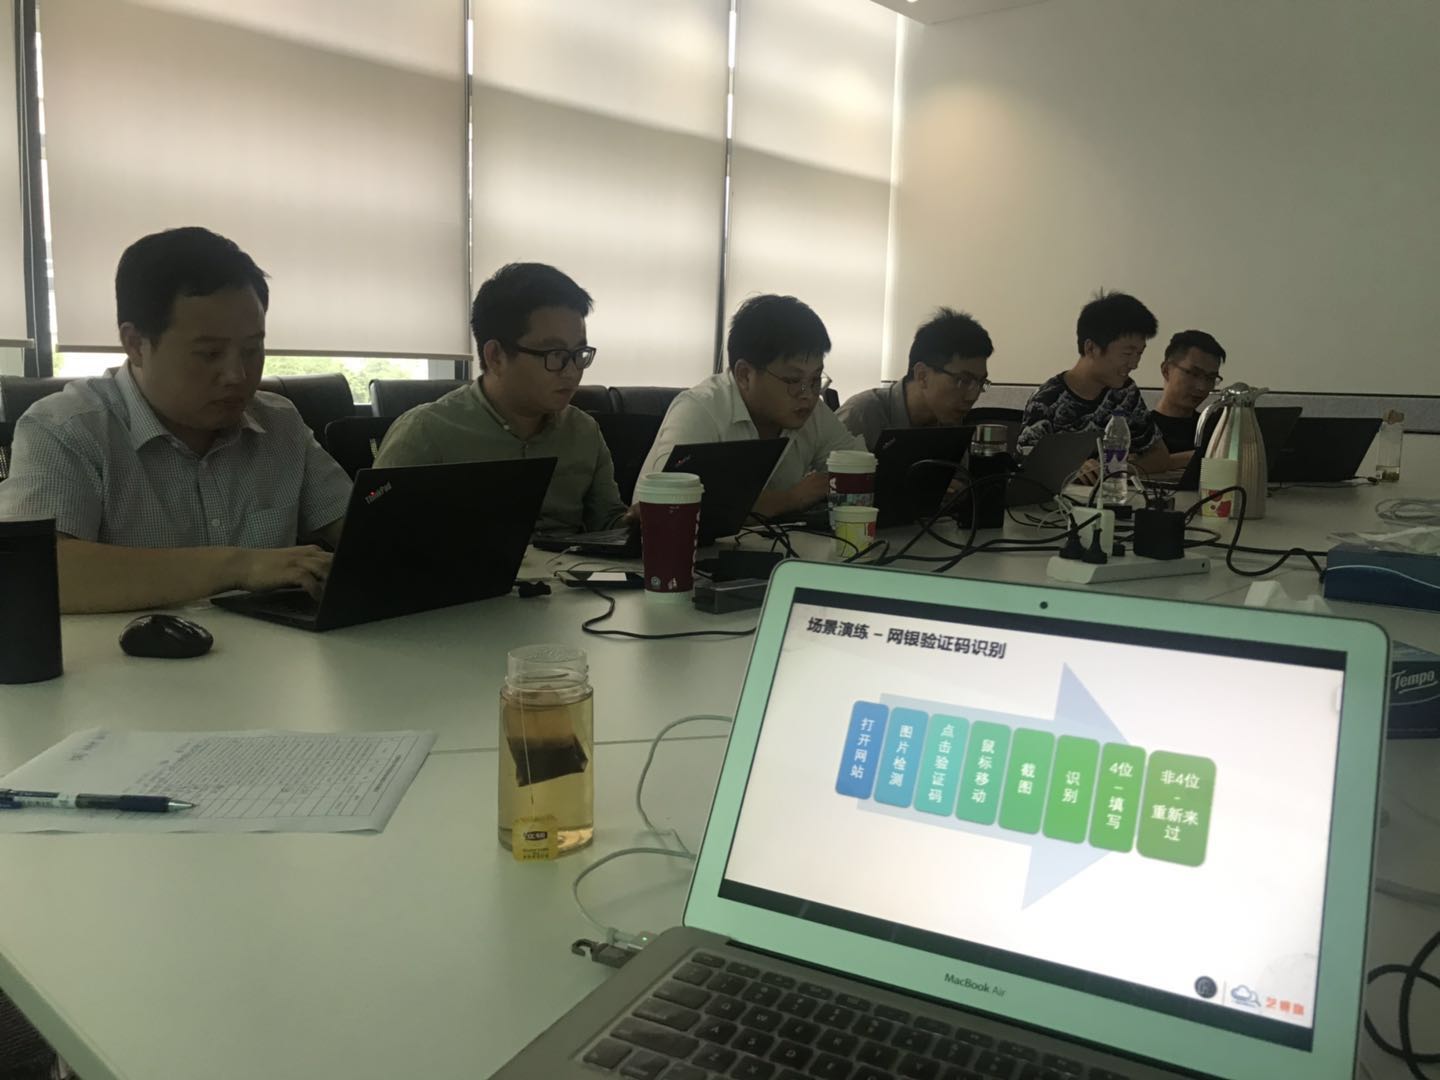 iS-RPA 技术认证培训 - 上海 20190620 班 - 培训完成